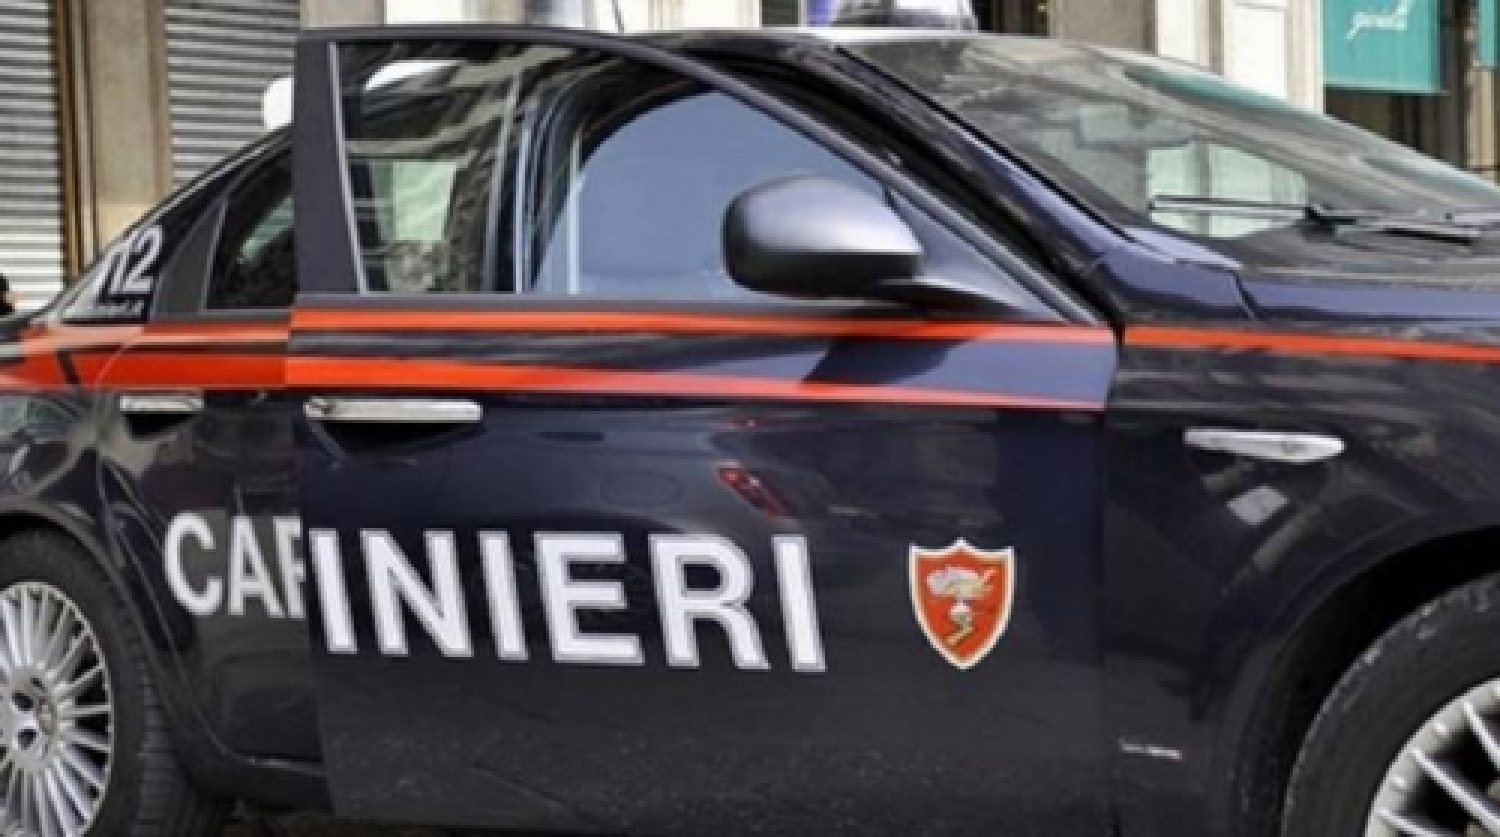 blitz-dei-carabinieri-tre-arresti-e-sequestrata-una-pressa-p-22828.660x368.jpg